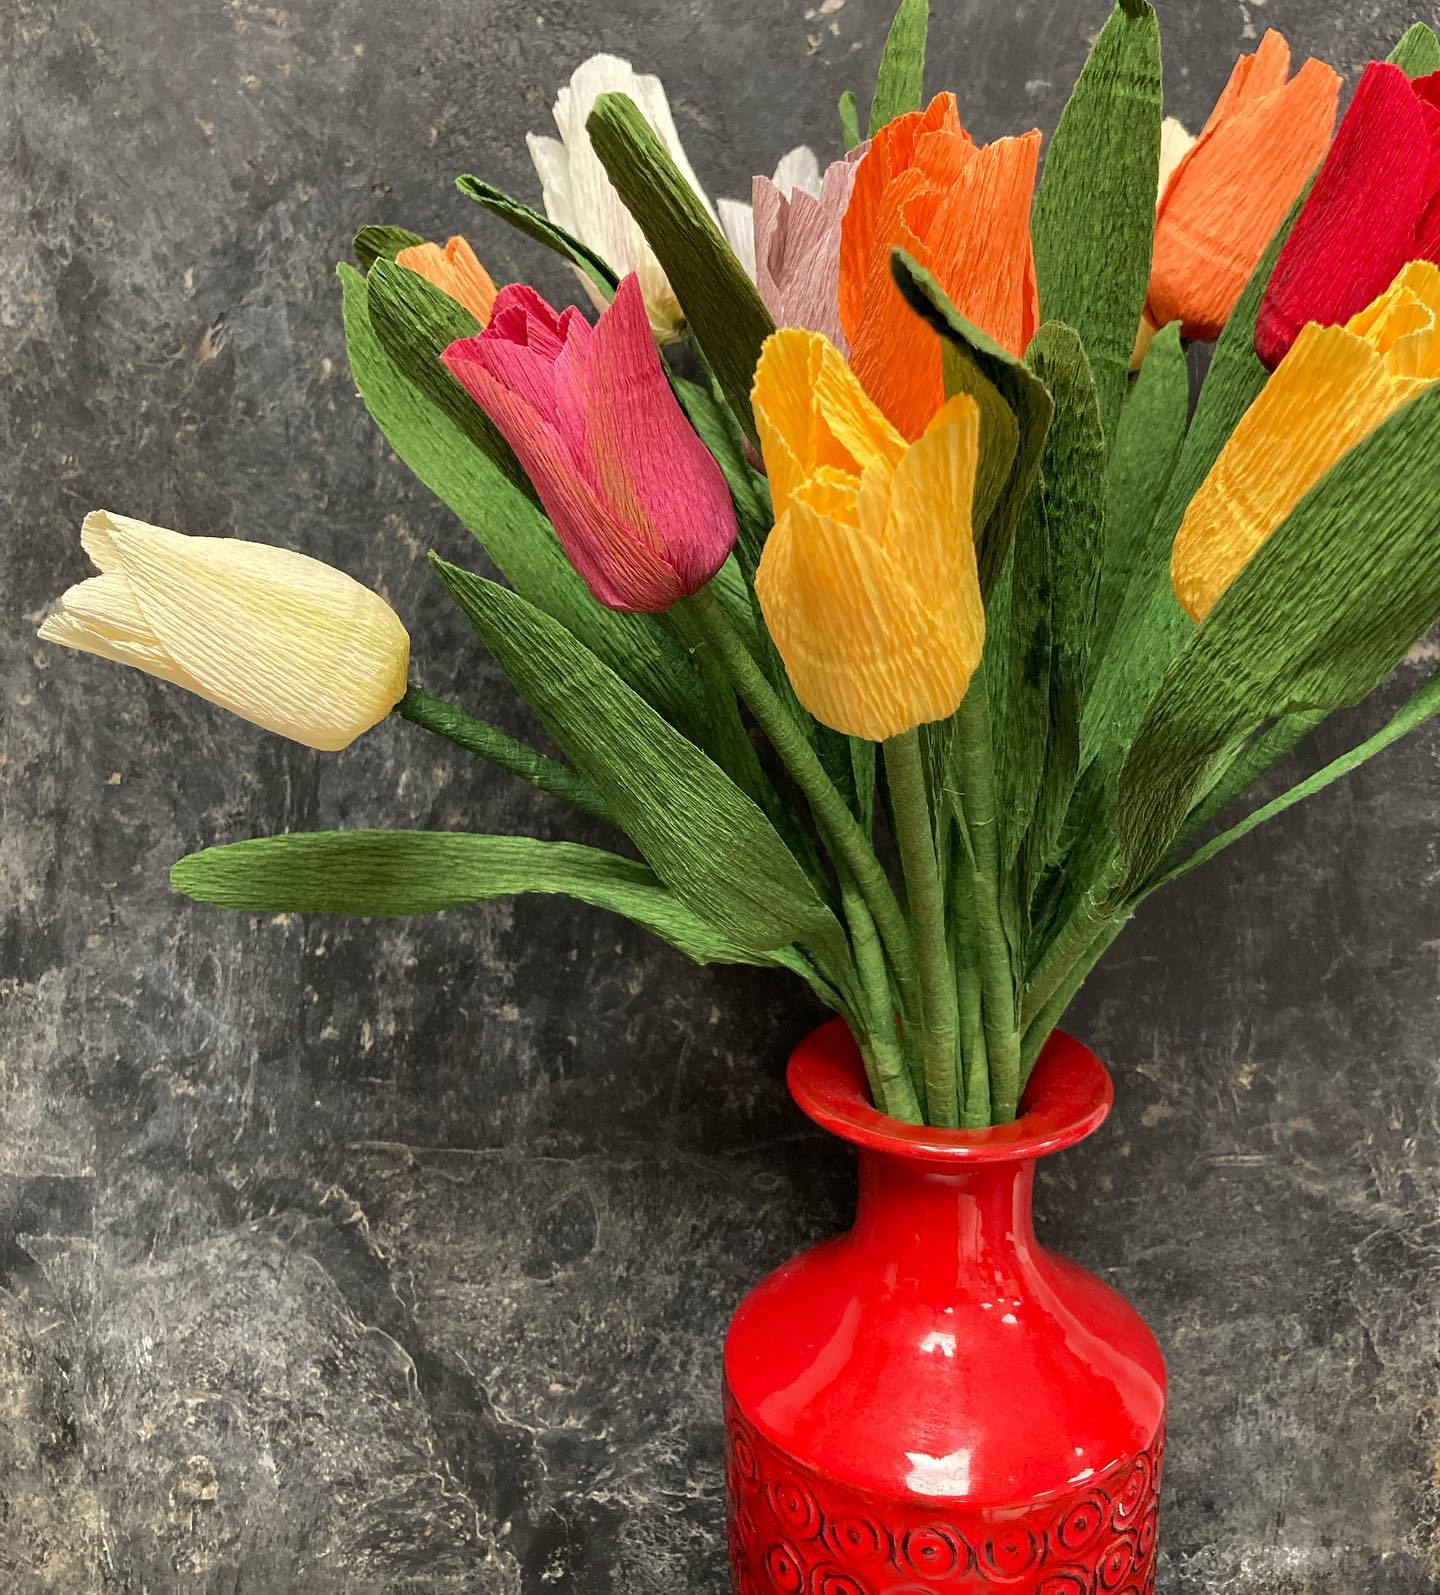 Lav en skøn julebuket af tulipaner. 

Vejledningen ligger i shoppen. 
Link i bio. 

#juleblomster #crepepapirblomster #crepepaperflowers #tulipaner #crepepaper #paperart #papertulips #papirblomsterdiy #crepepapirdiy #julepynt #julepyntdiy #diy #diyhomedecor